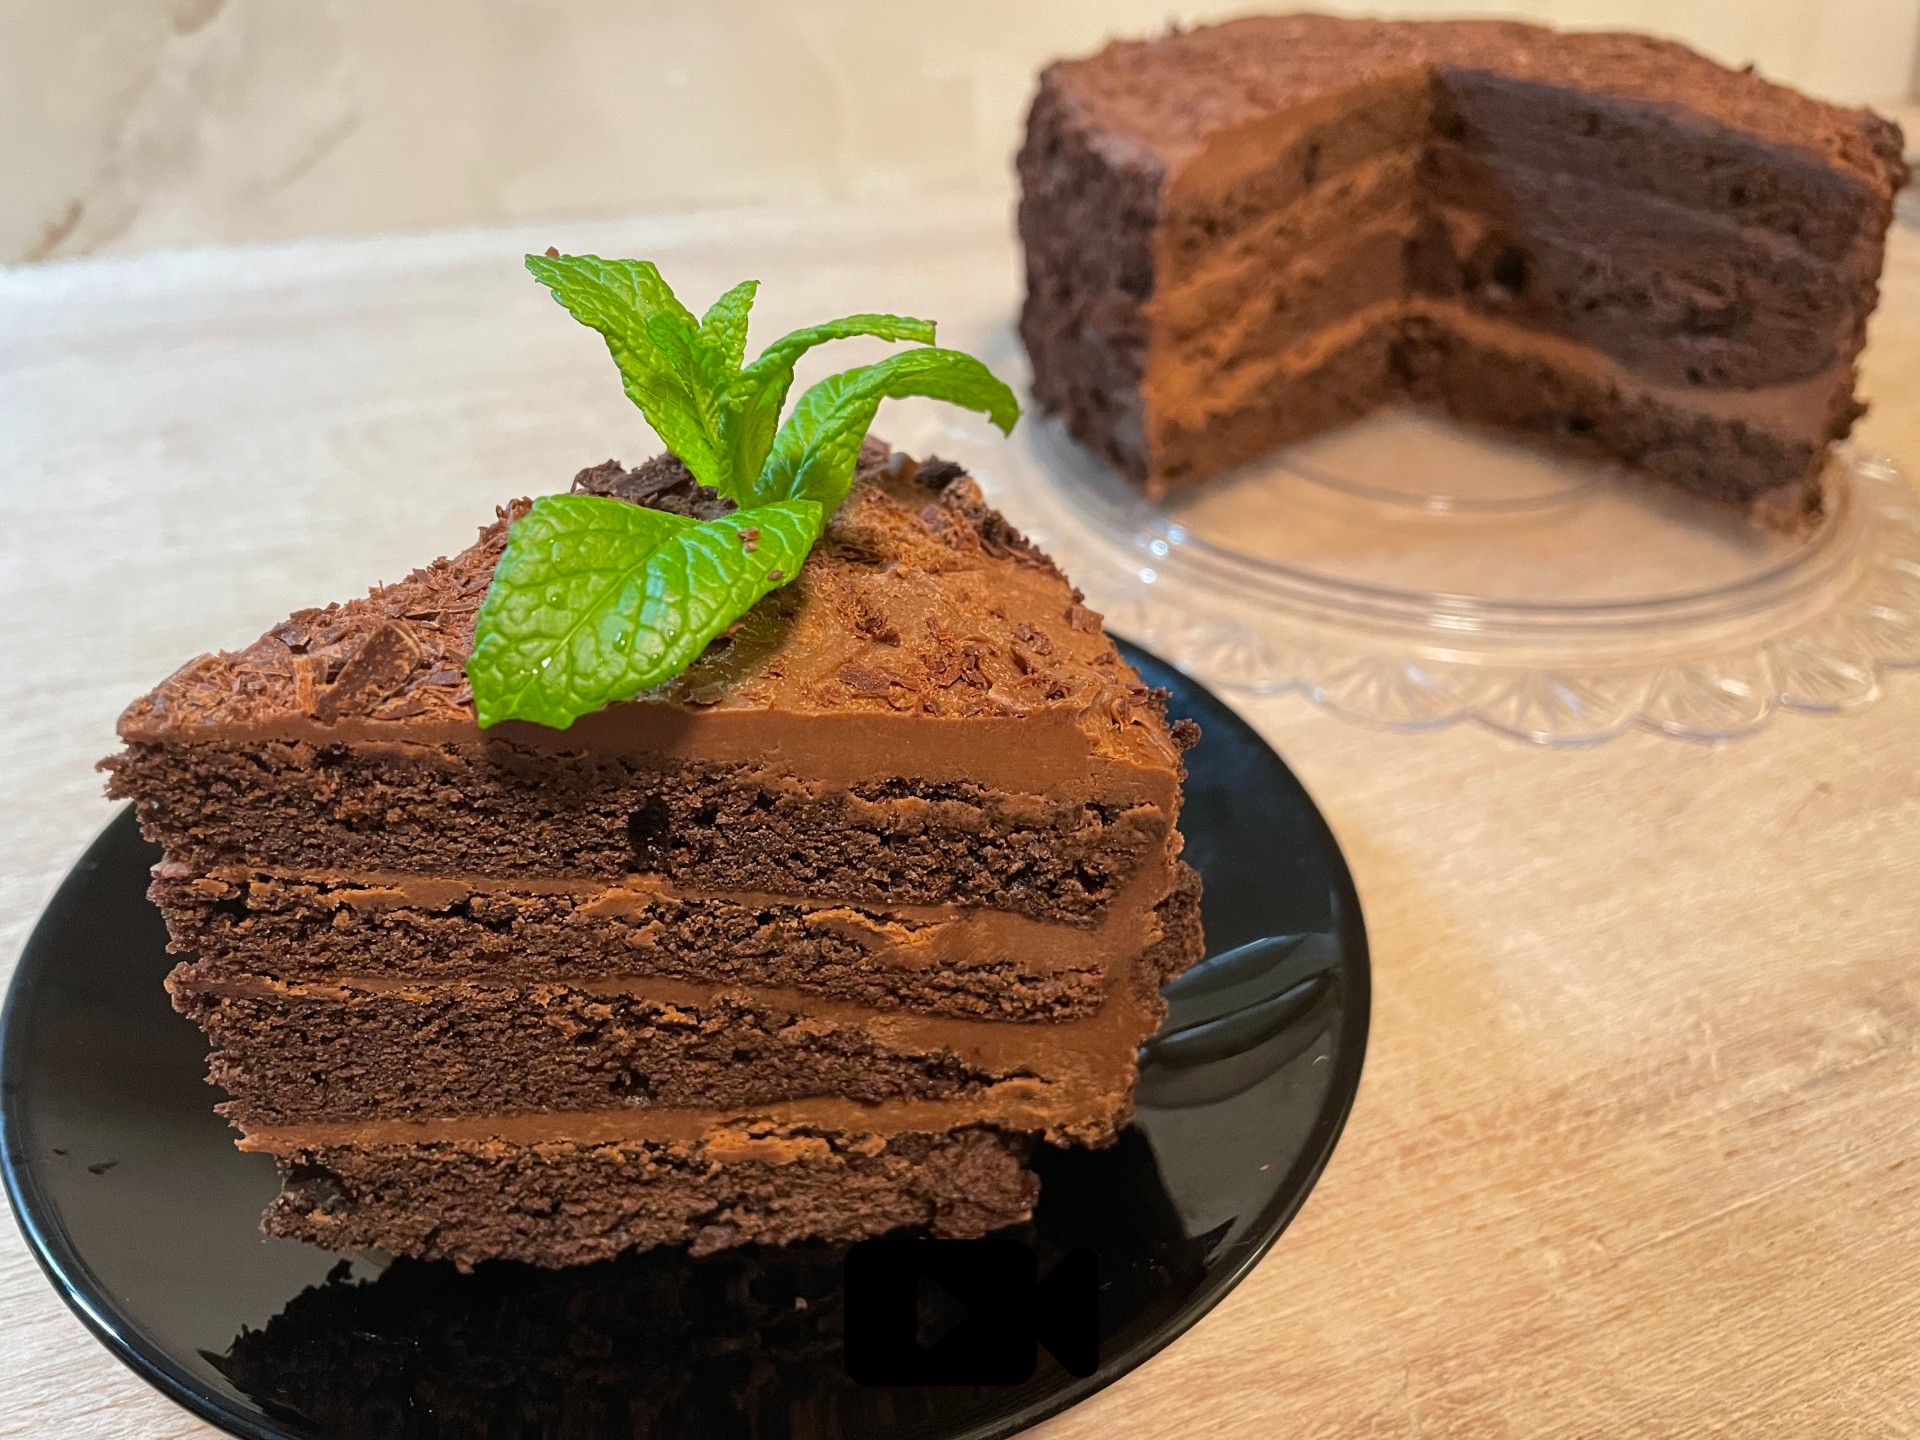 Συνταγή για το απόλυτο devil's cake. Αποτελείται από στρώσεις αφράτου κέικ και σοκολατένιας βουτυρόκρεμας. Ιδανική επιλογή και για τούρτα.